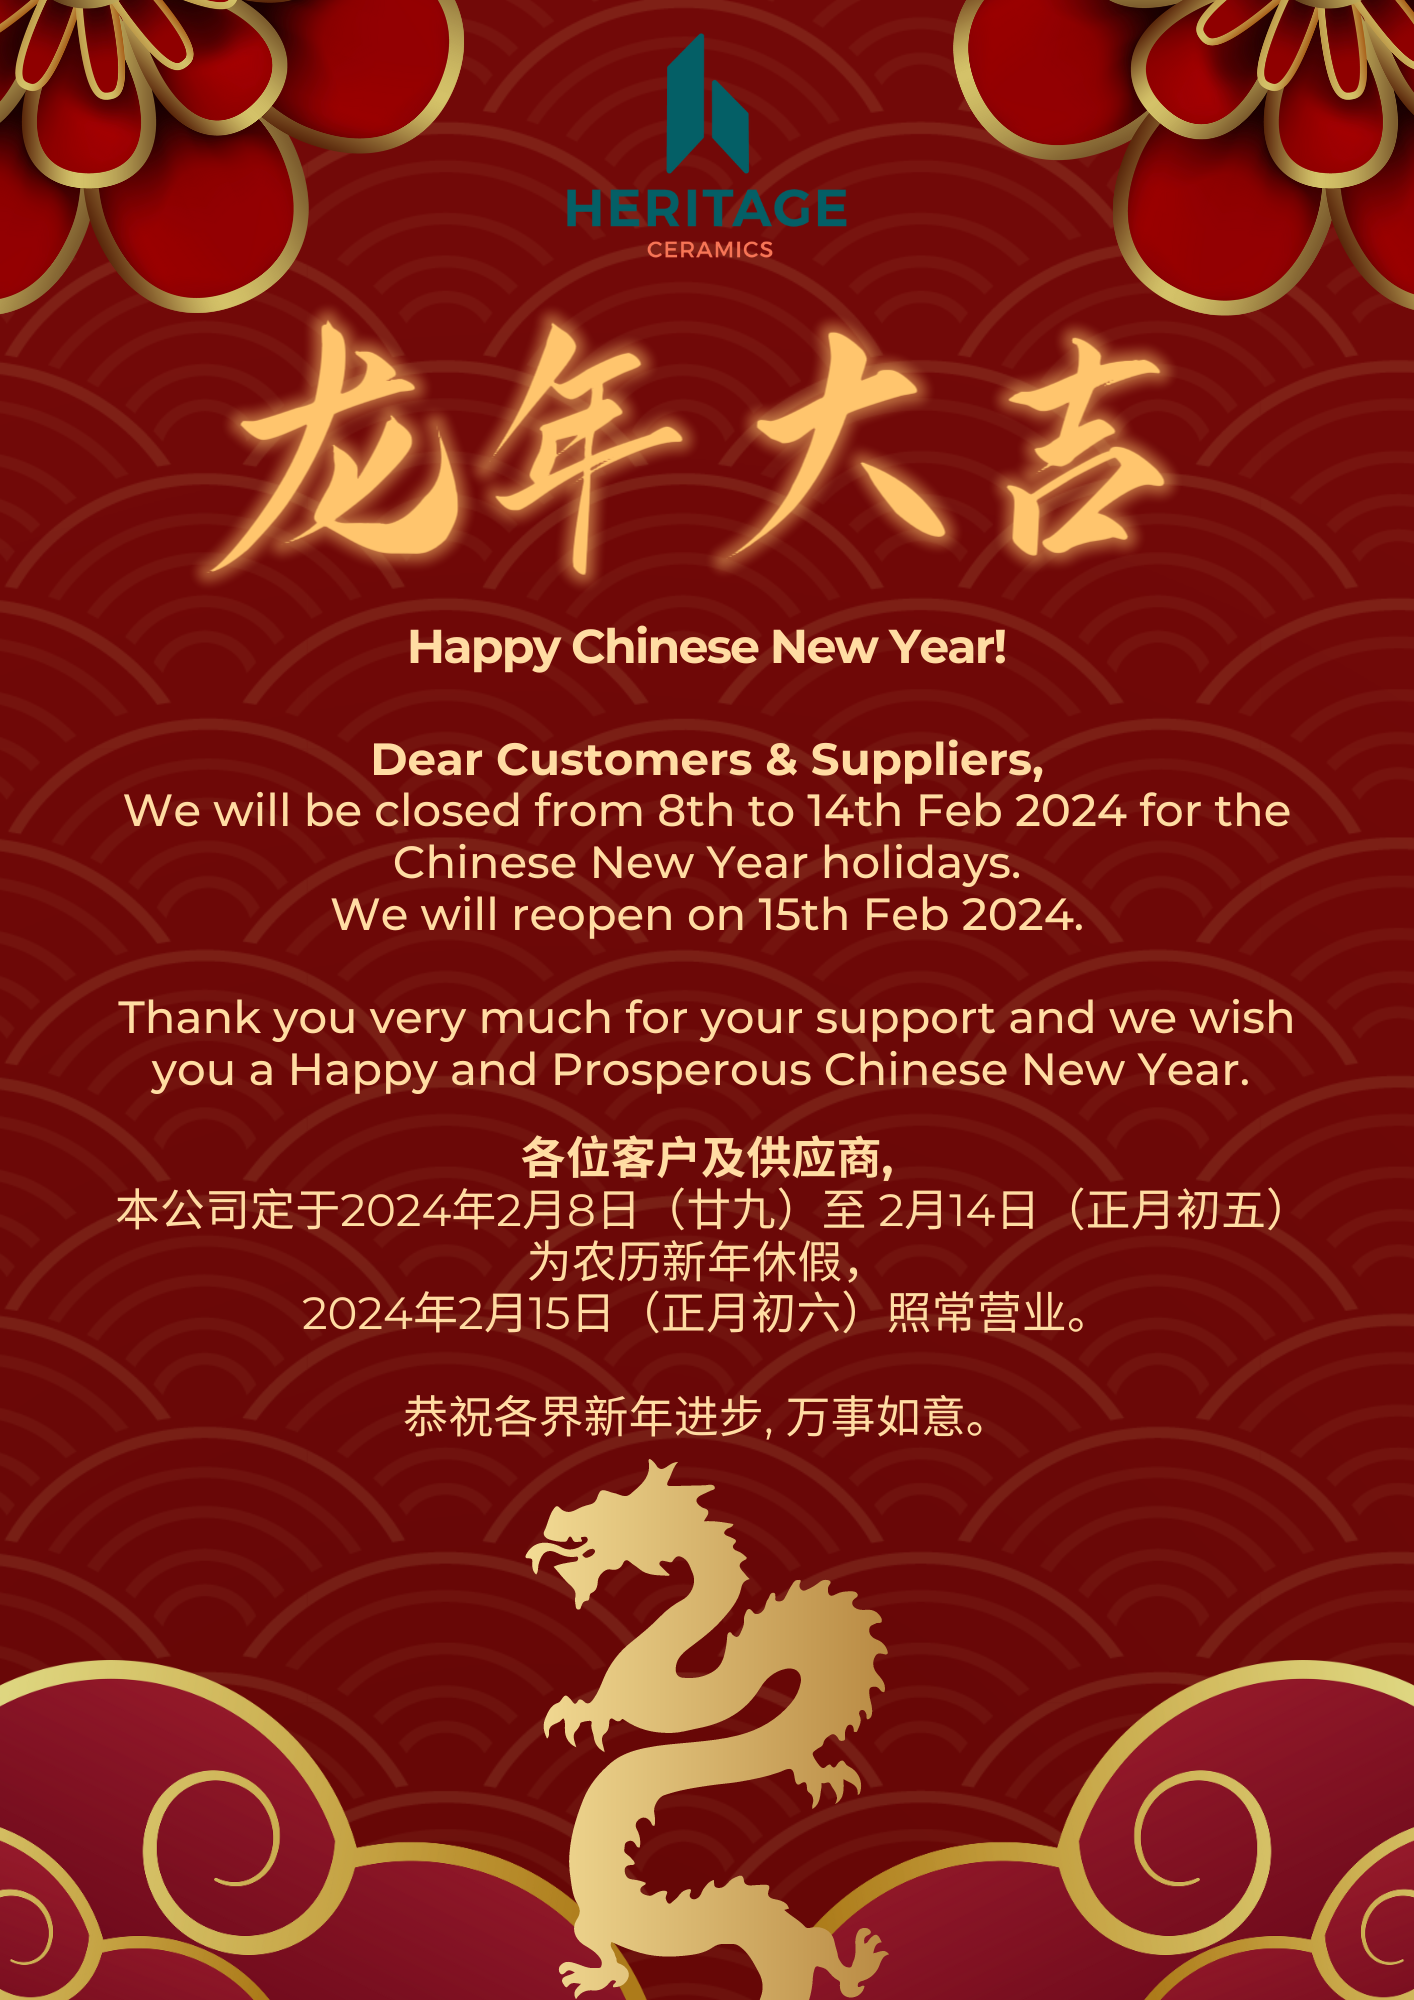 Heritage Ceramics Lunar New Year 2024 Closure Notice